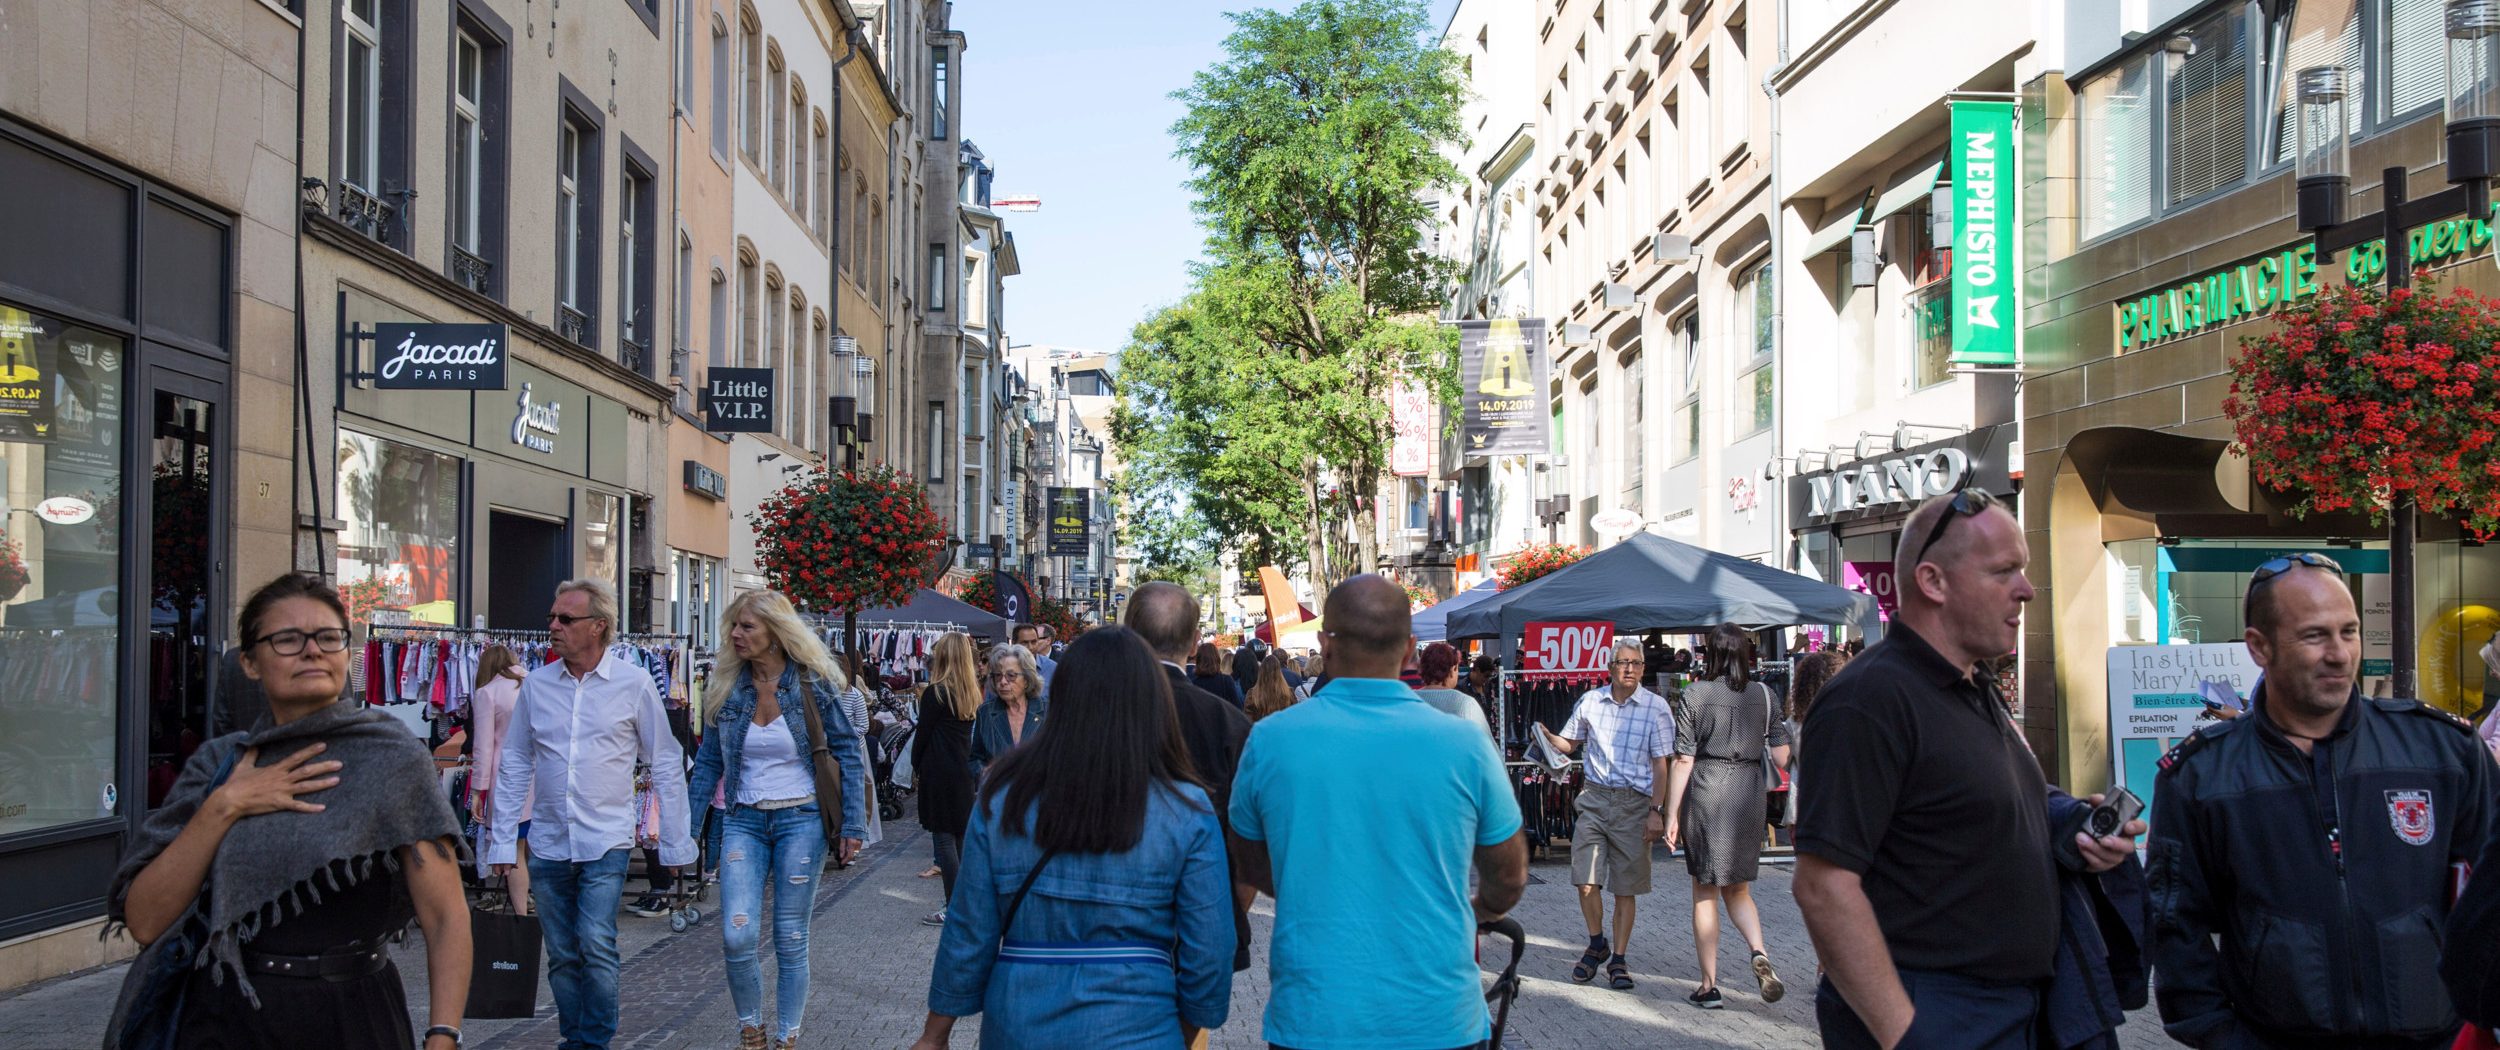 Umfrage: Das sind die besten Verbraucher-Erfahrungen in Luxemburg